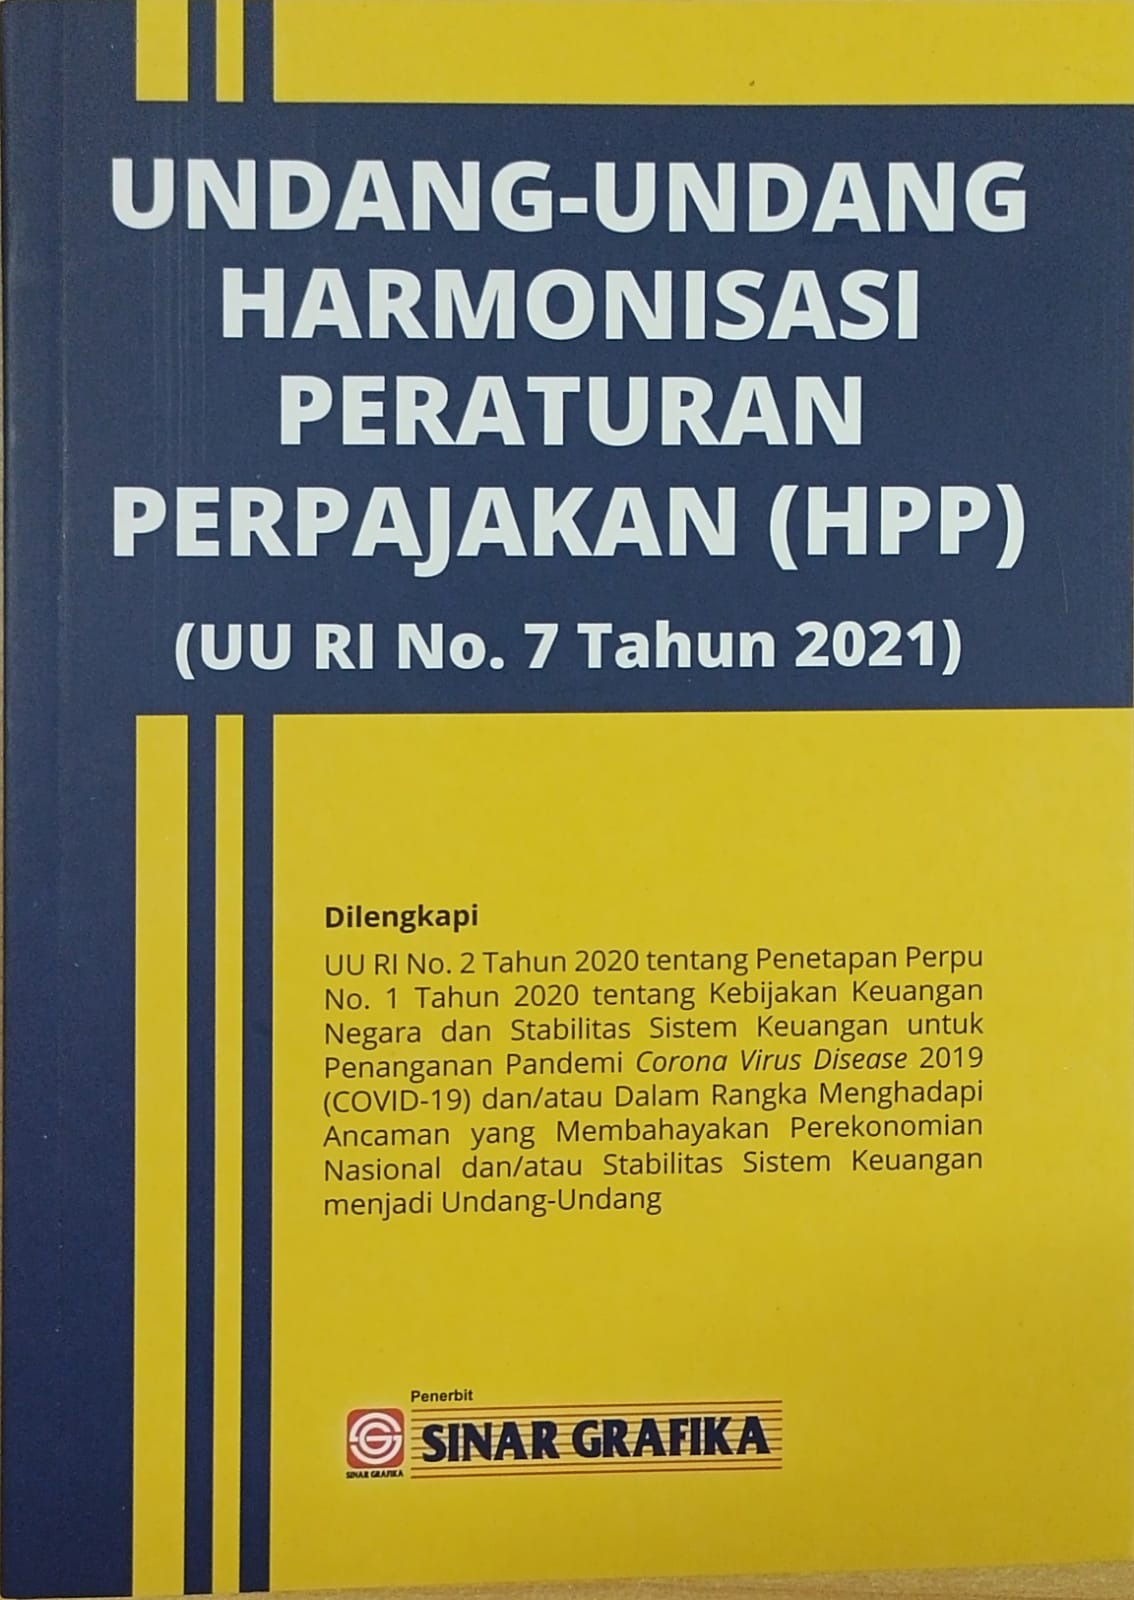 Undang-undang harmonisasi peraturan perpajakan (HPP): (UU RI no. 7 tahun 2021)